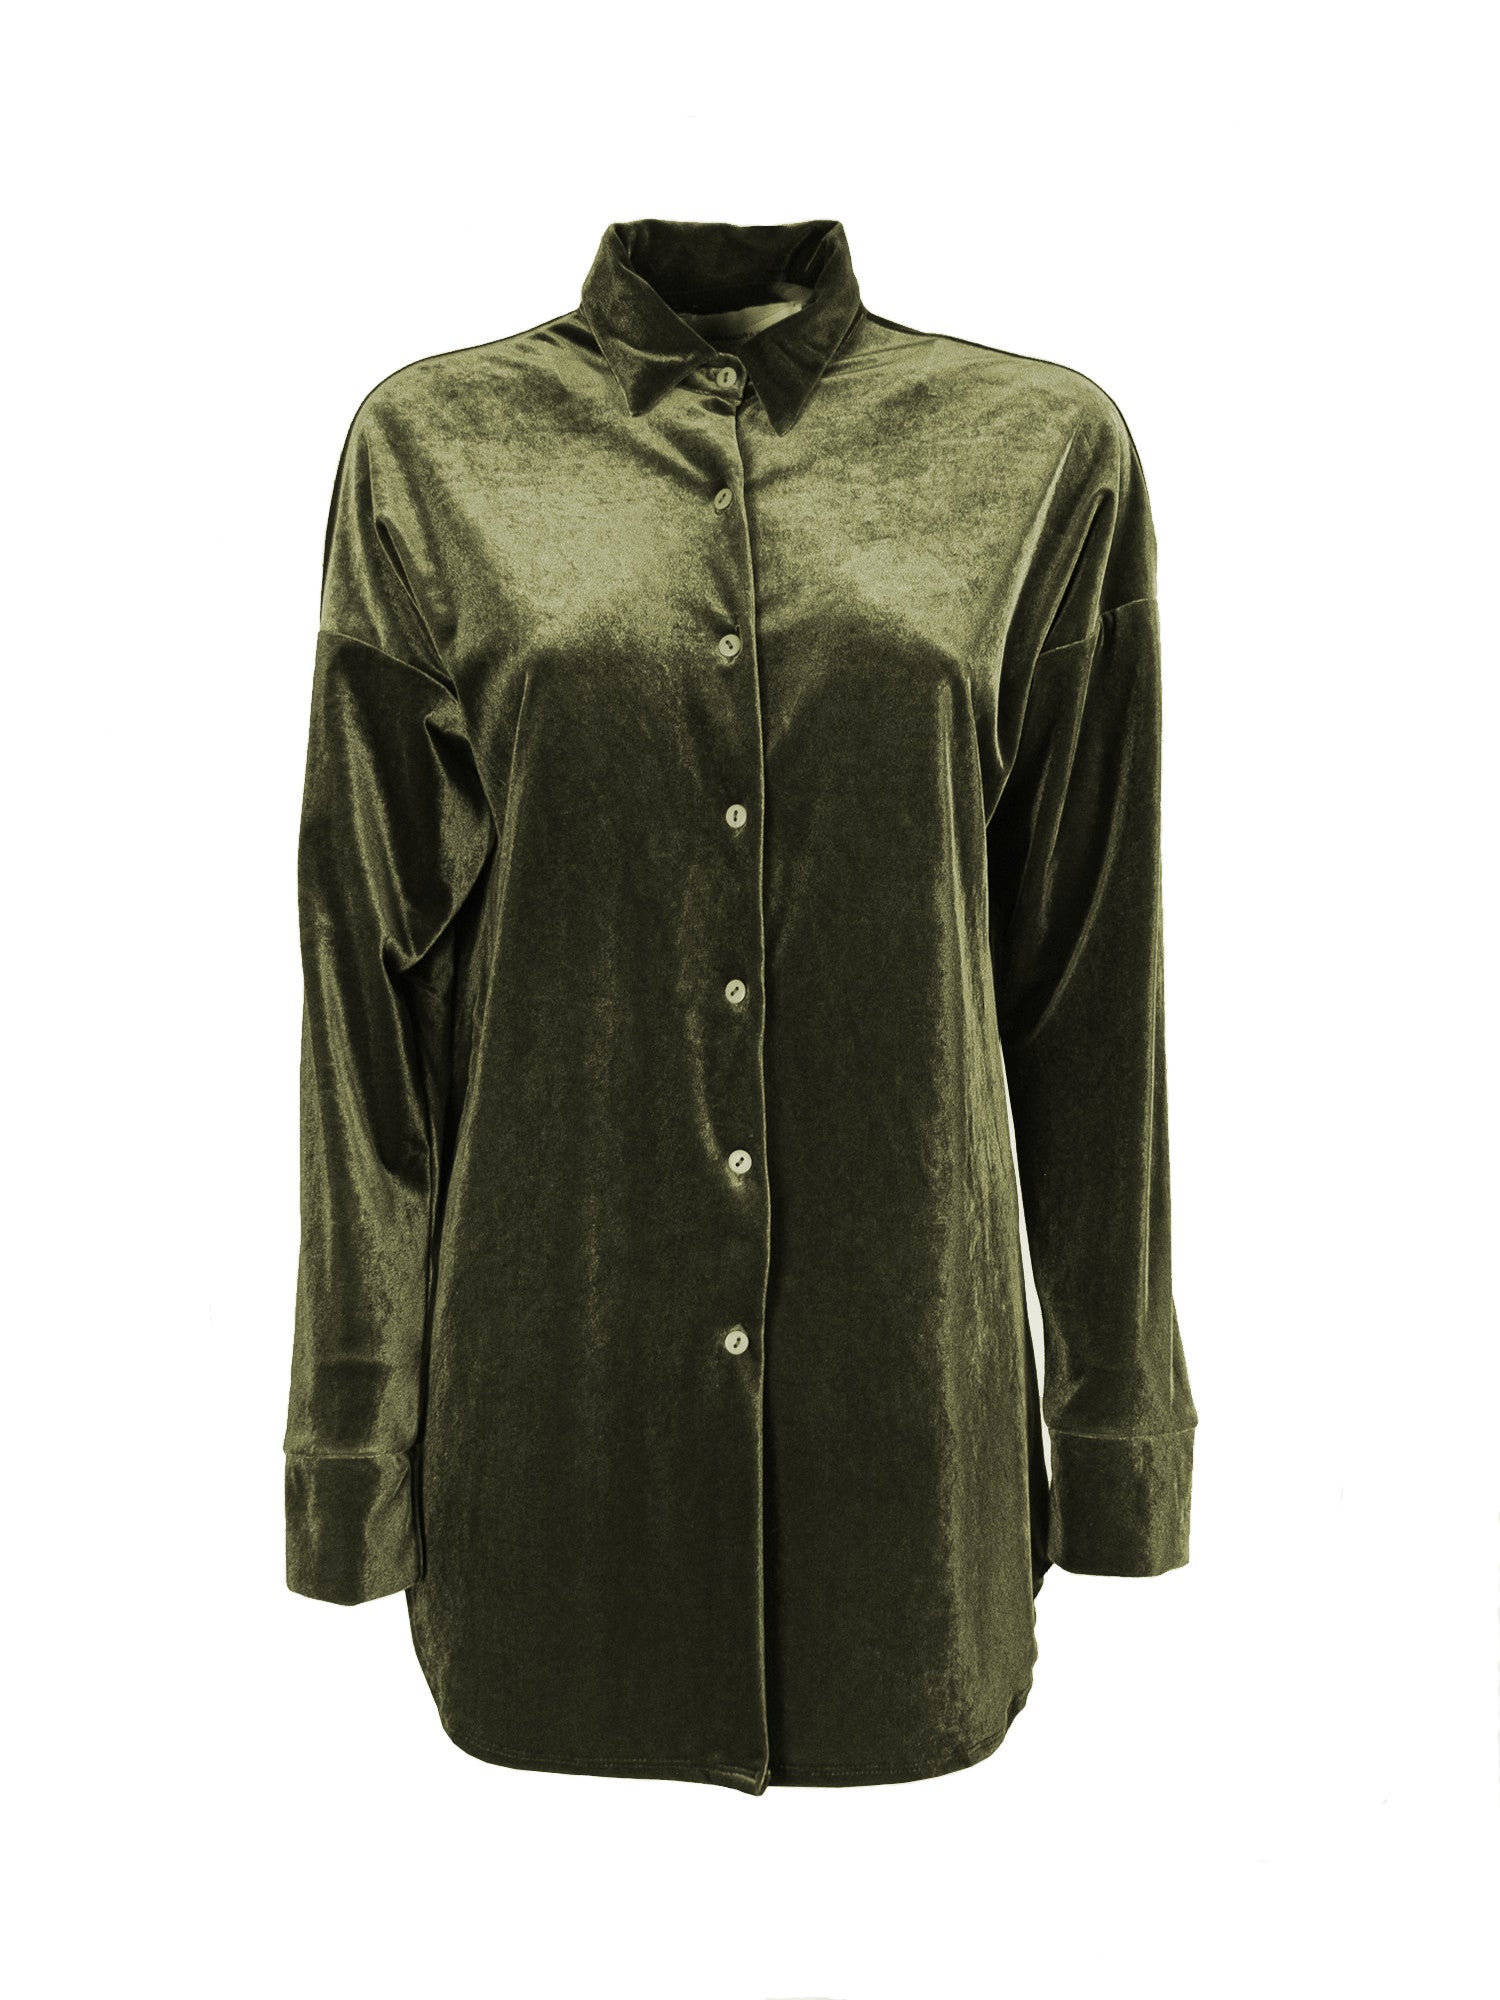 CELESTE - green chenille shirt